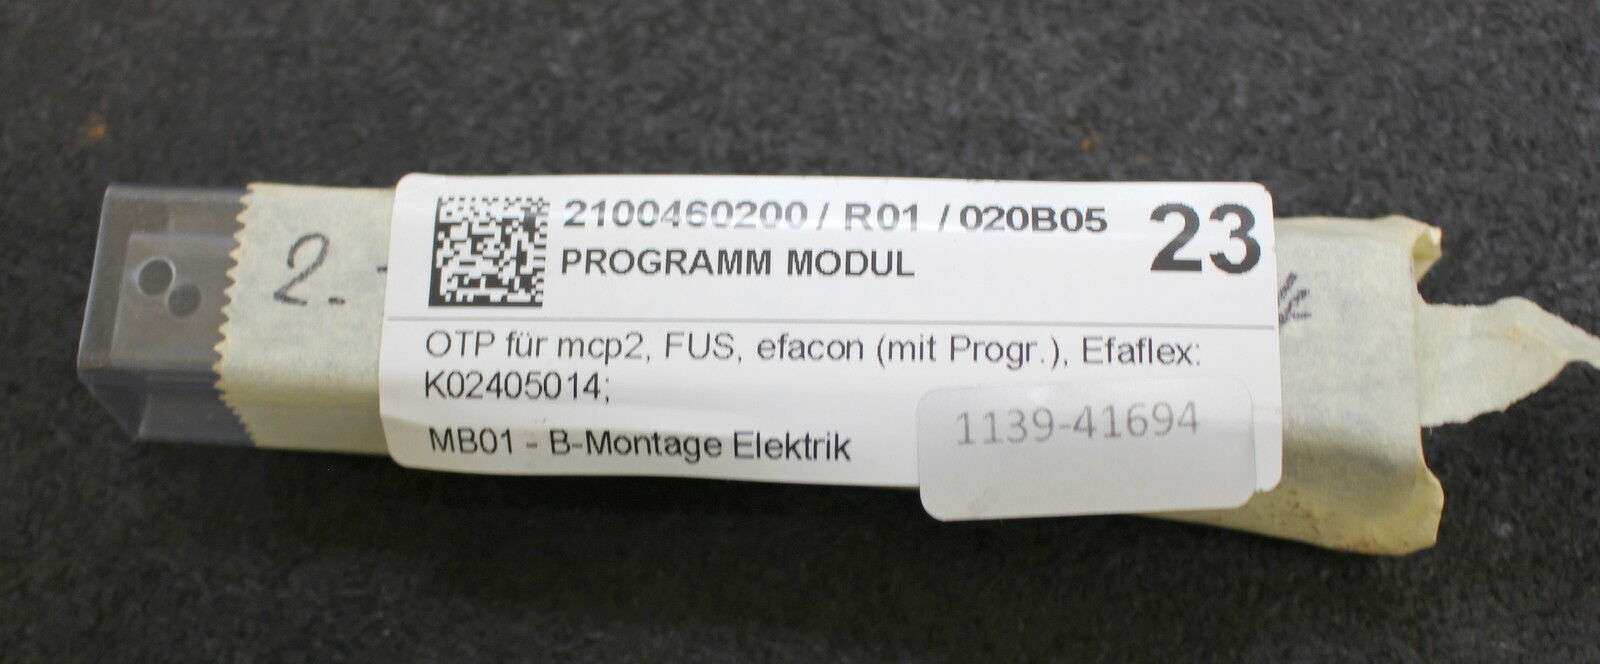 EFAFLEX Programm Modul OTP für MCP2 FUS mit Programm Art. K02405014 - 8J5235-1